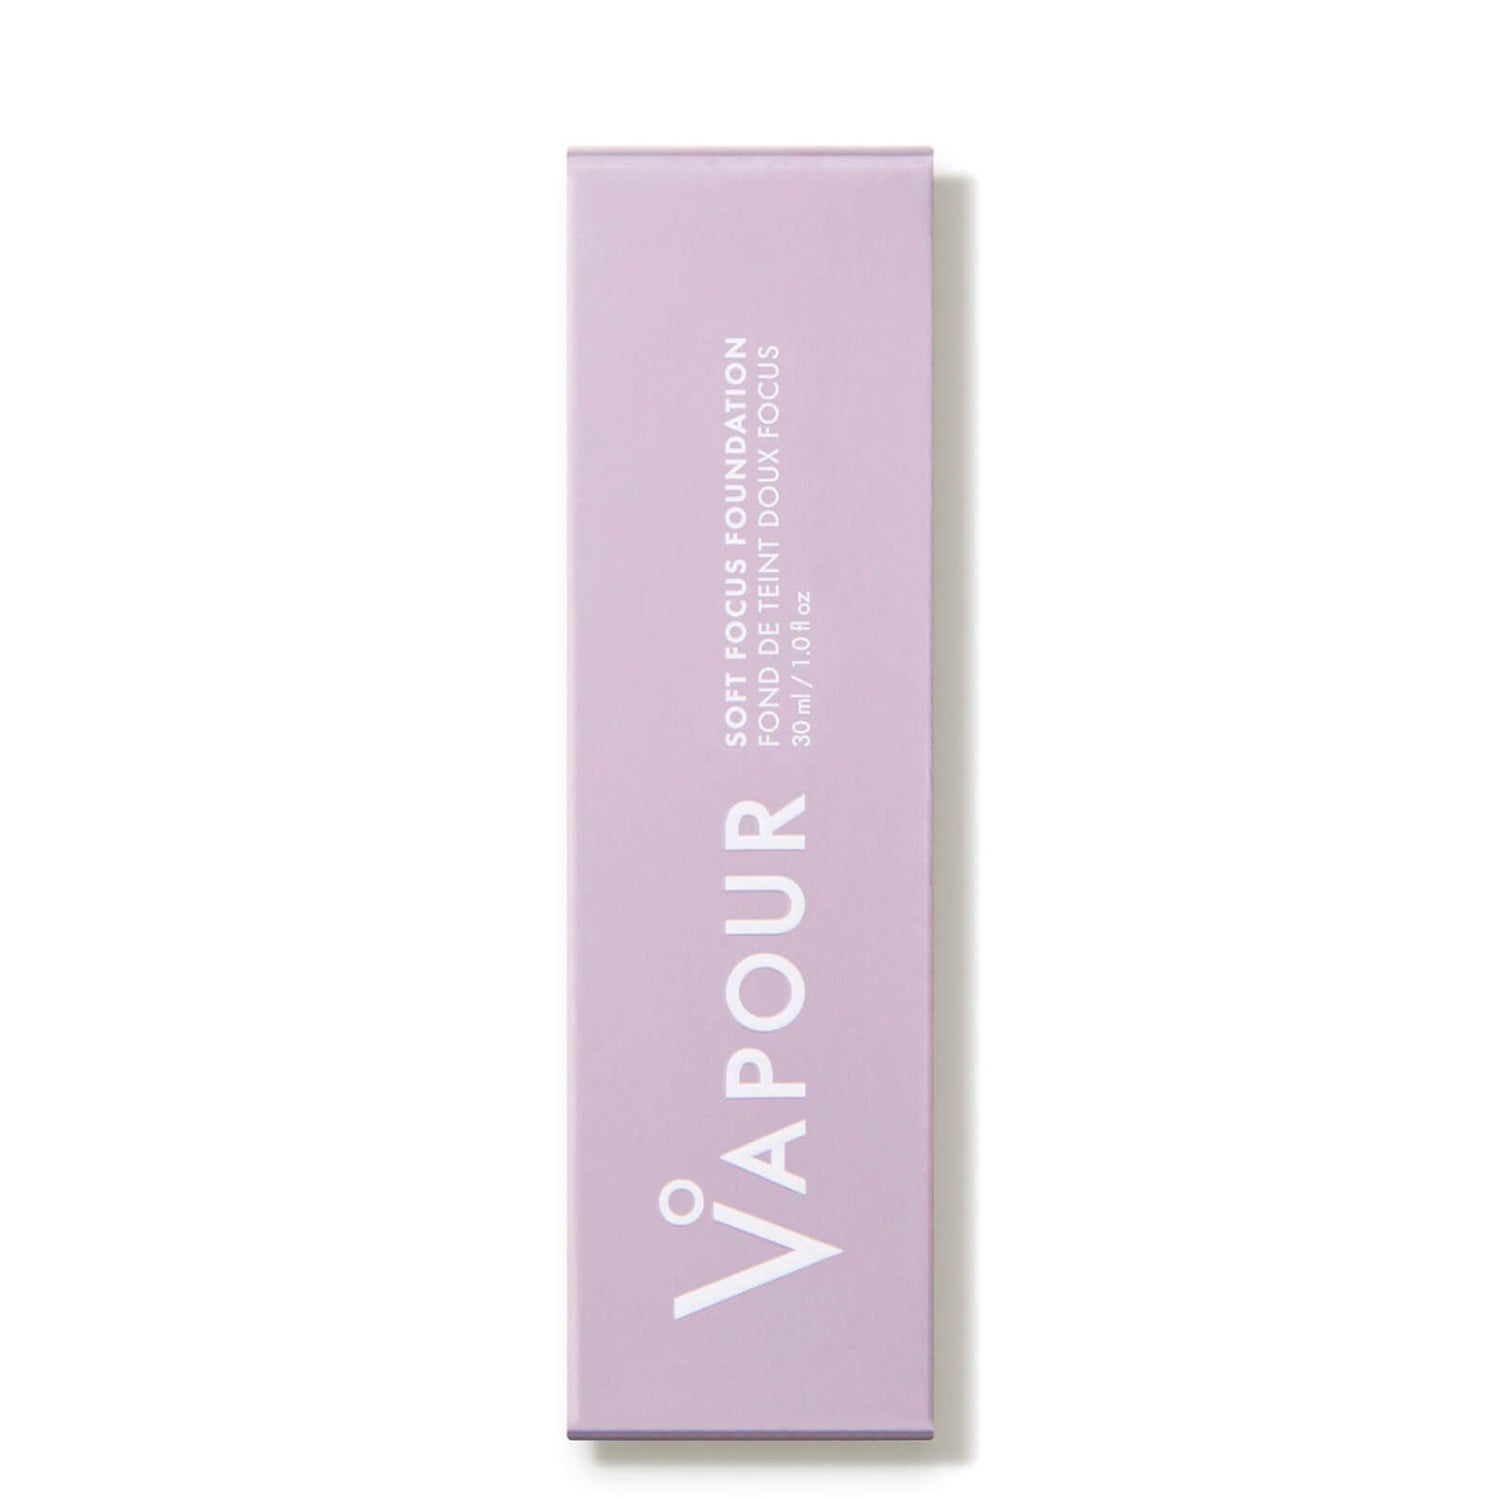 Vapour Beauty Soft Focus Foundation (1 fl. oz.)